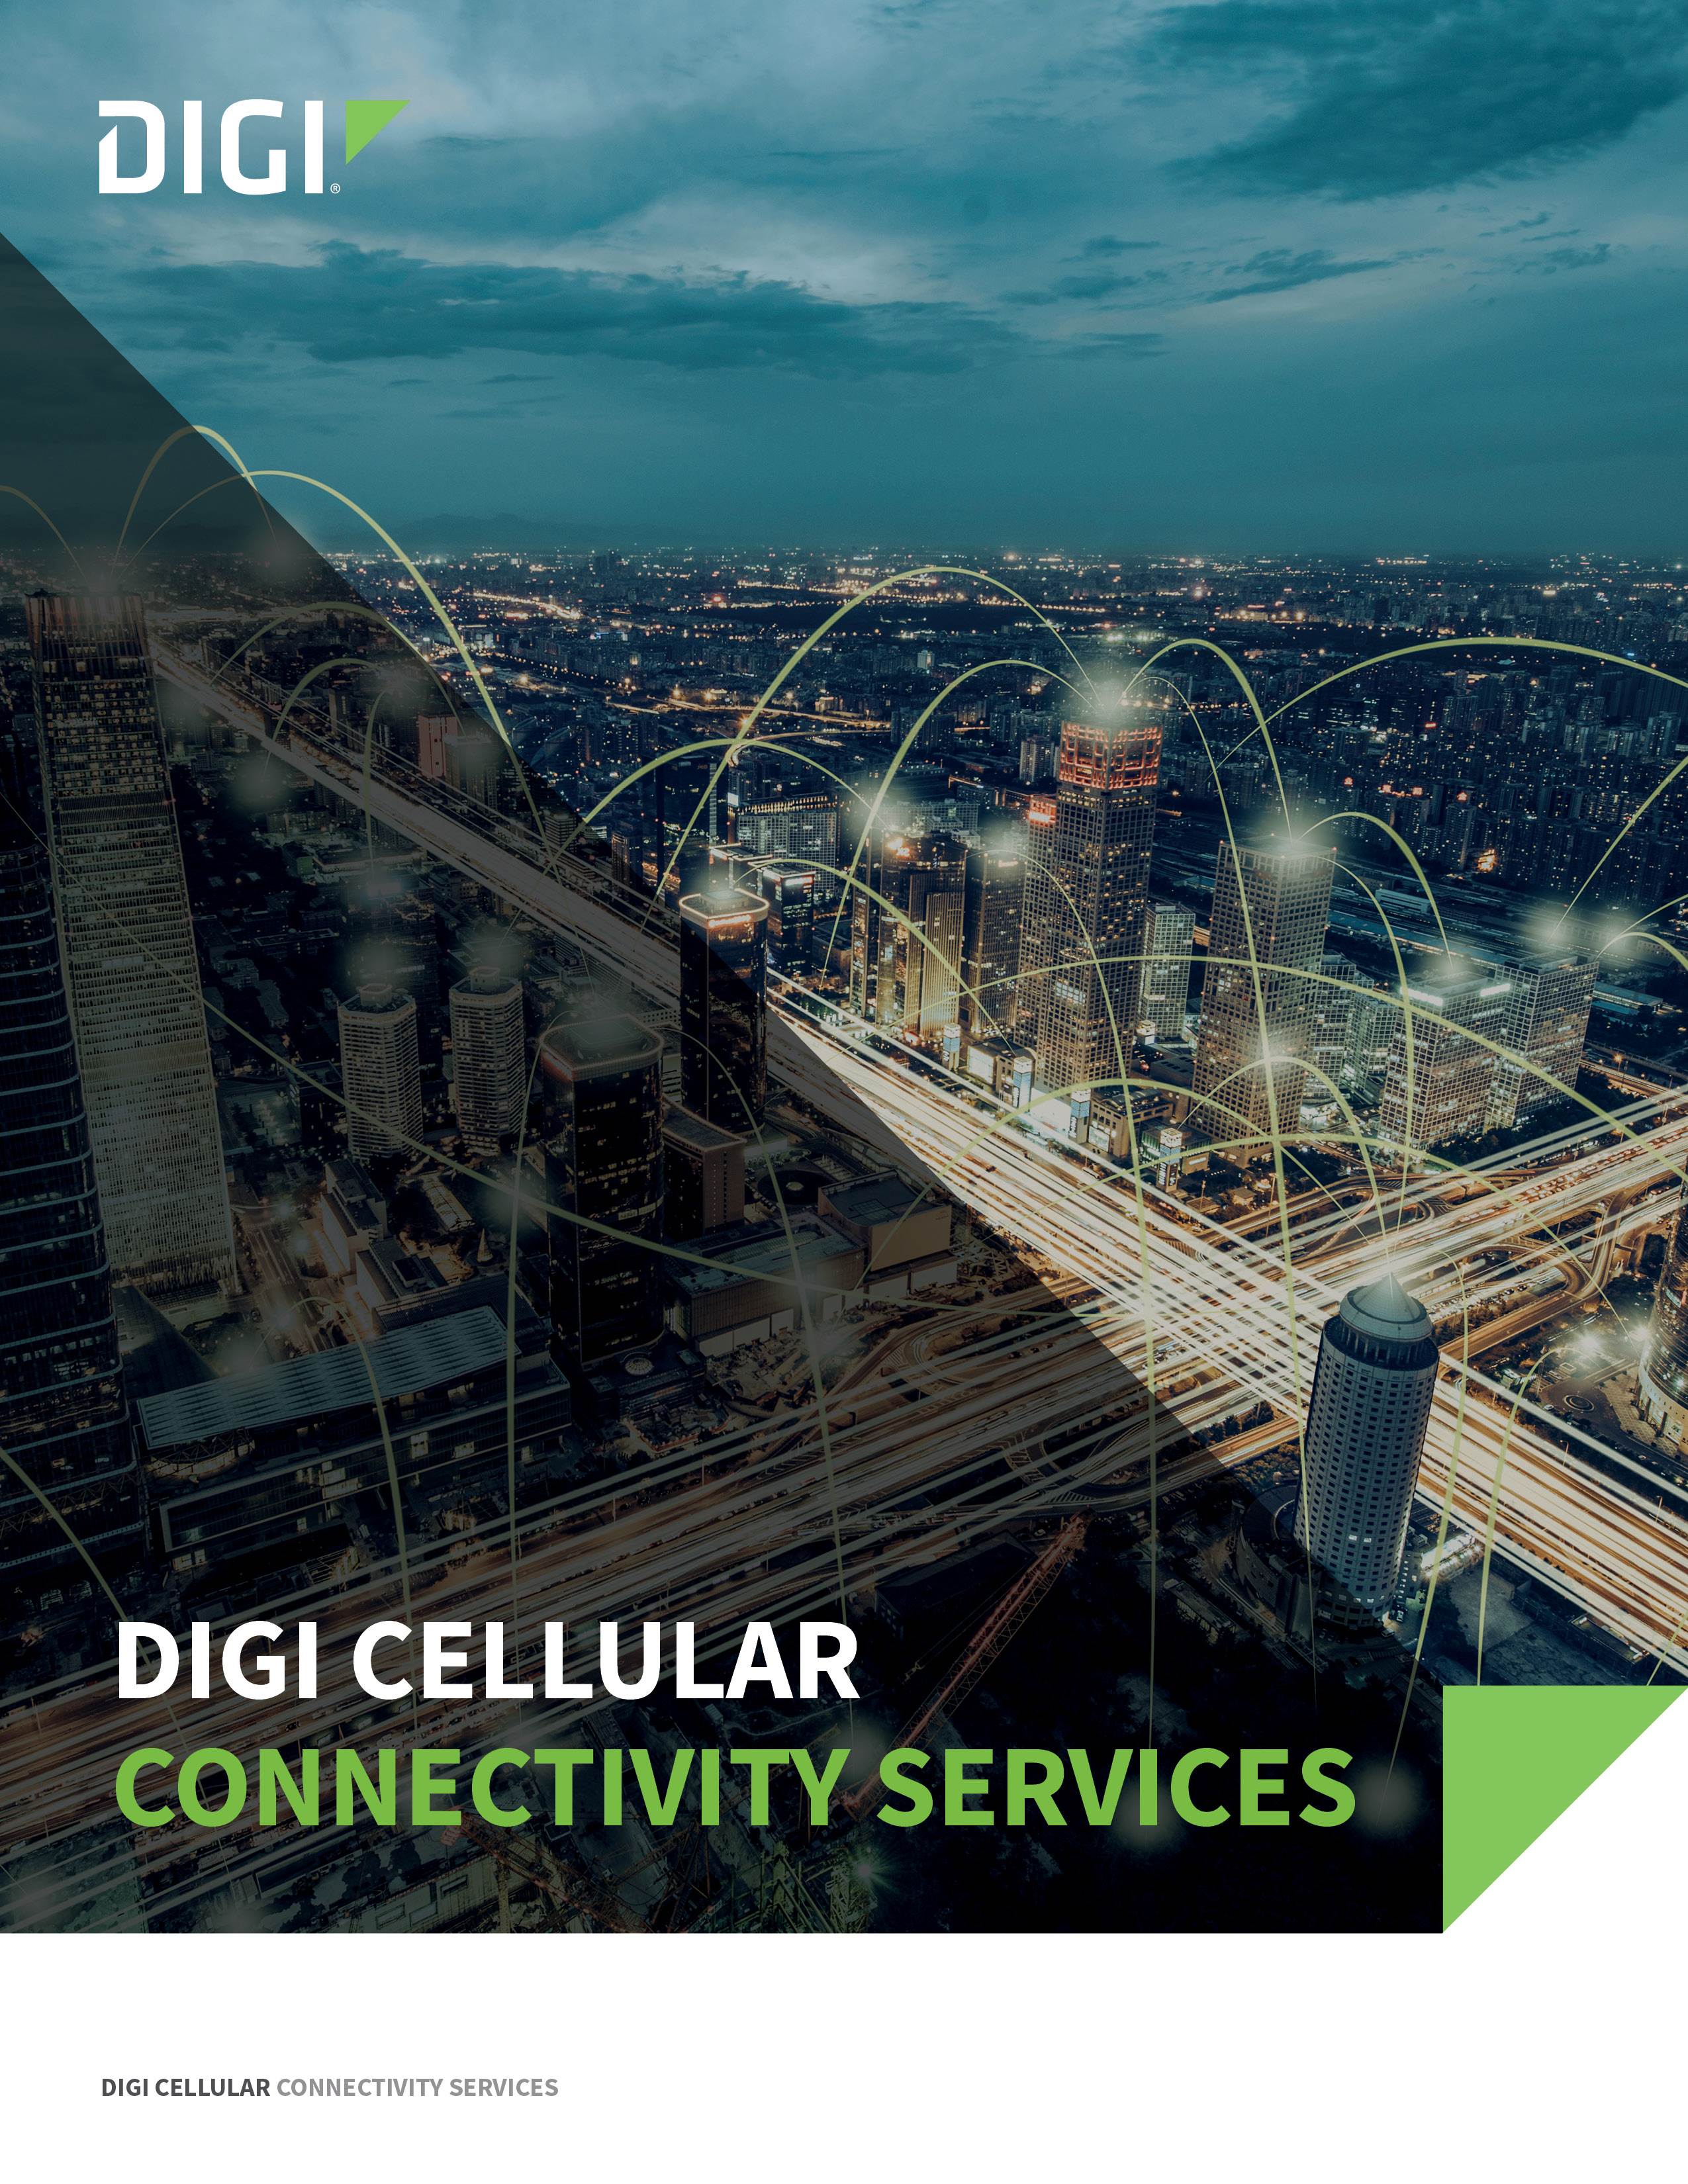 Servicios de conectividad celular Digi